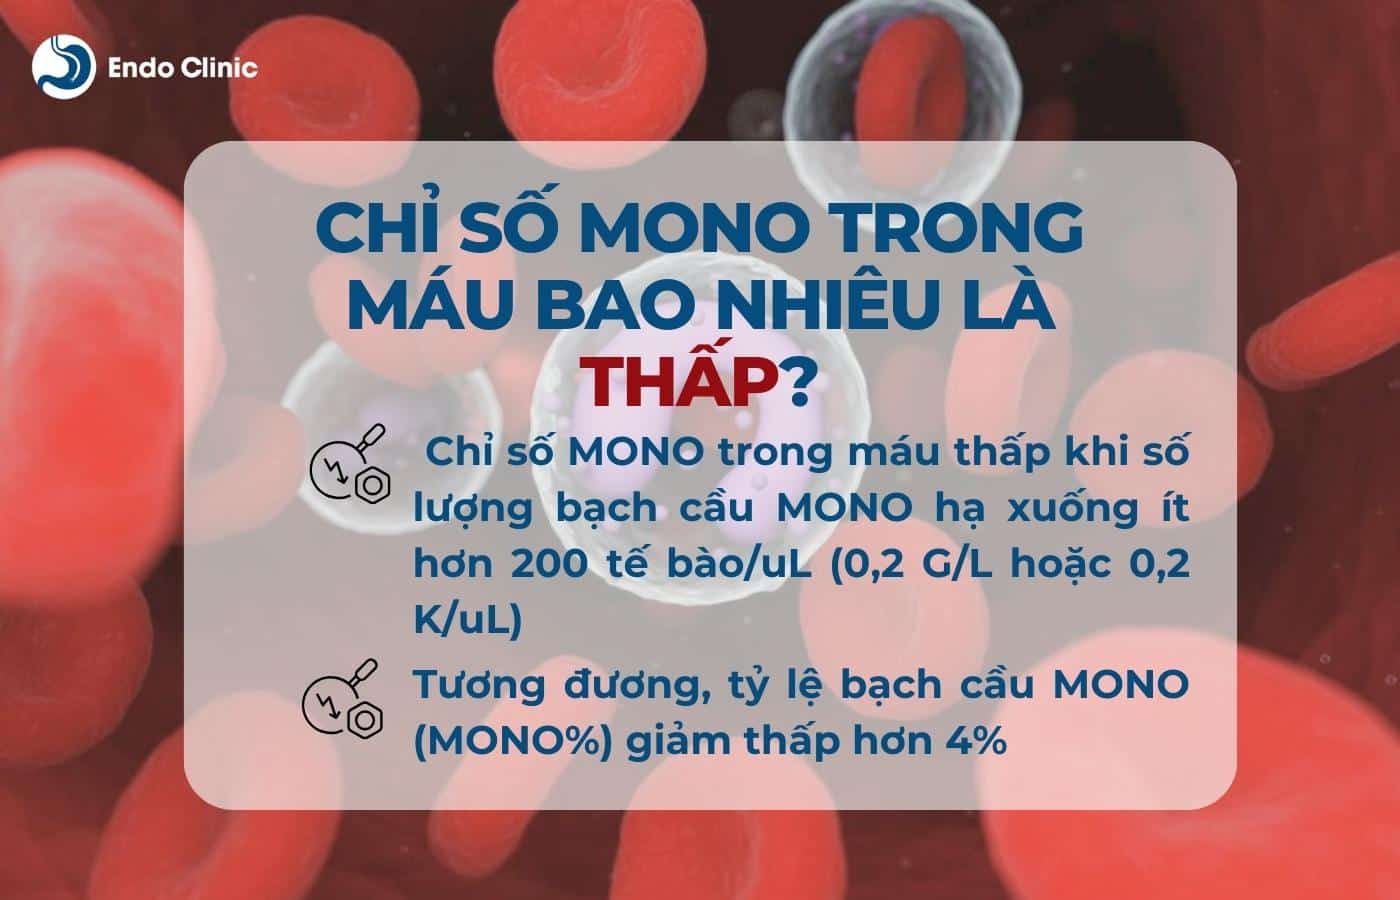 Chỉ số MONO trong máu thấp là bao nhiêu?